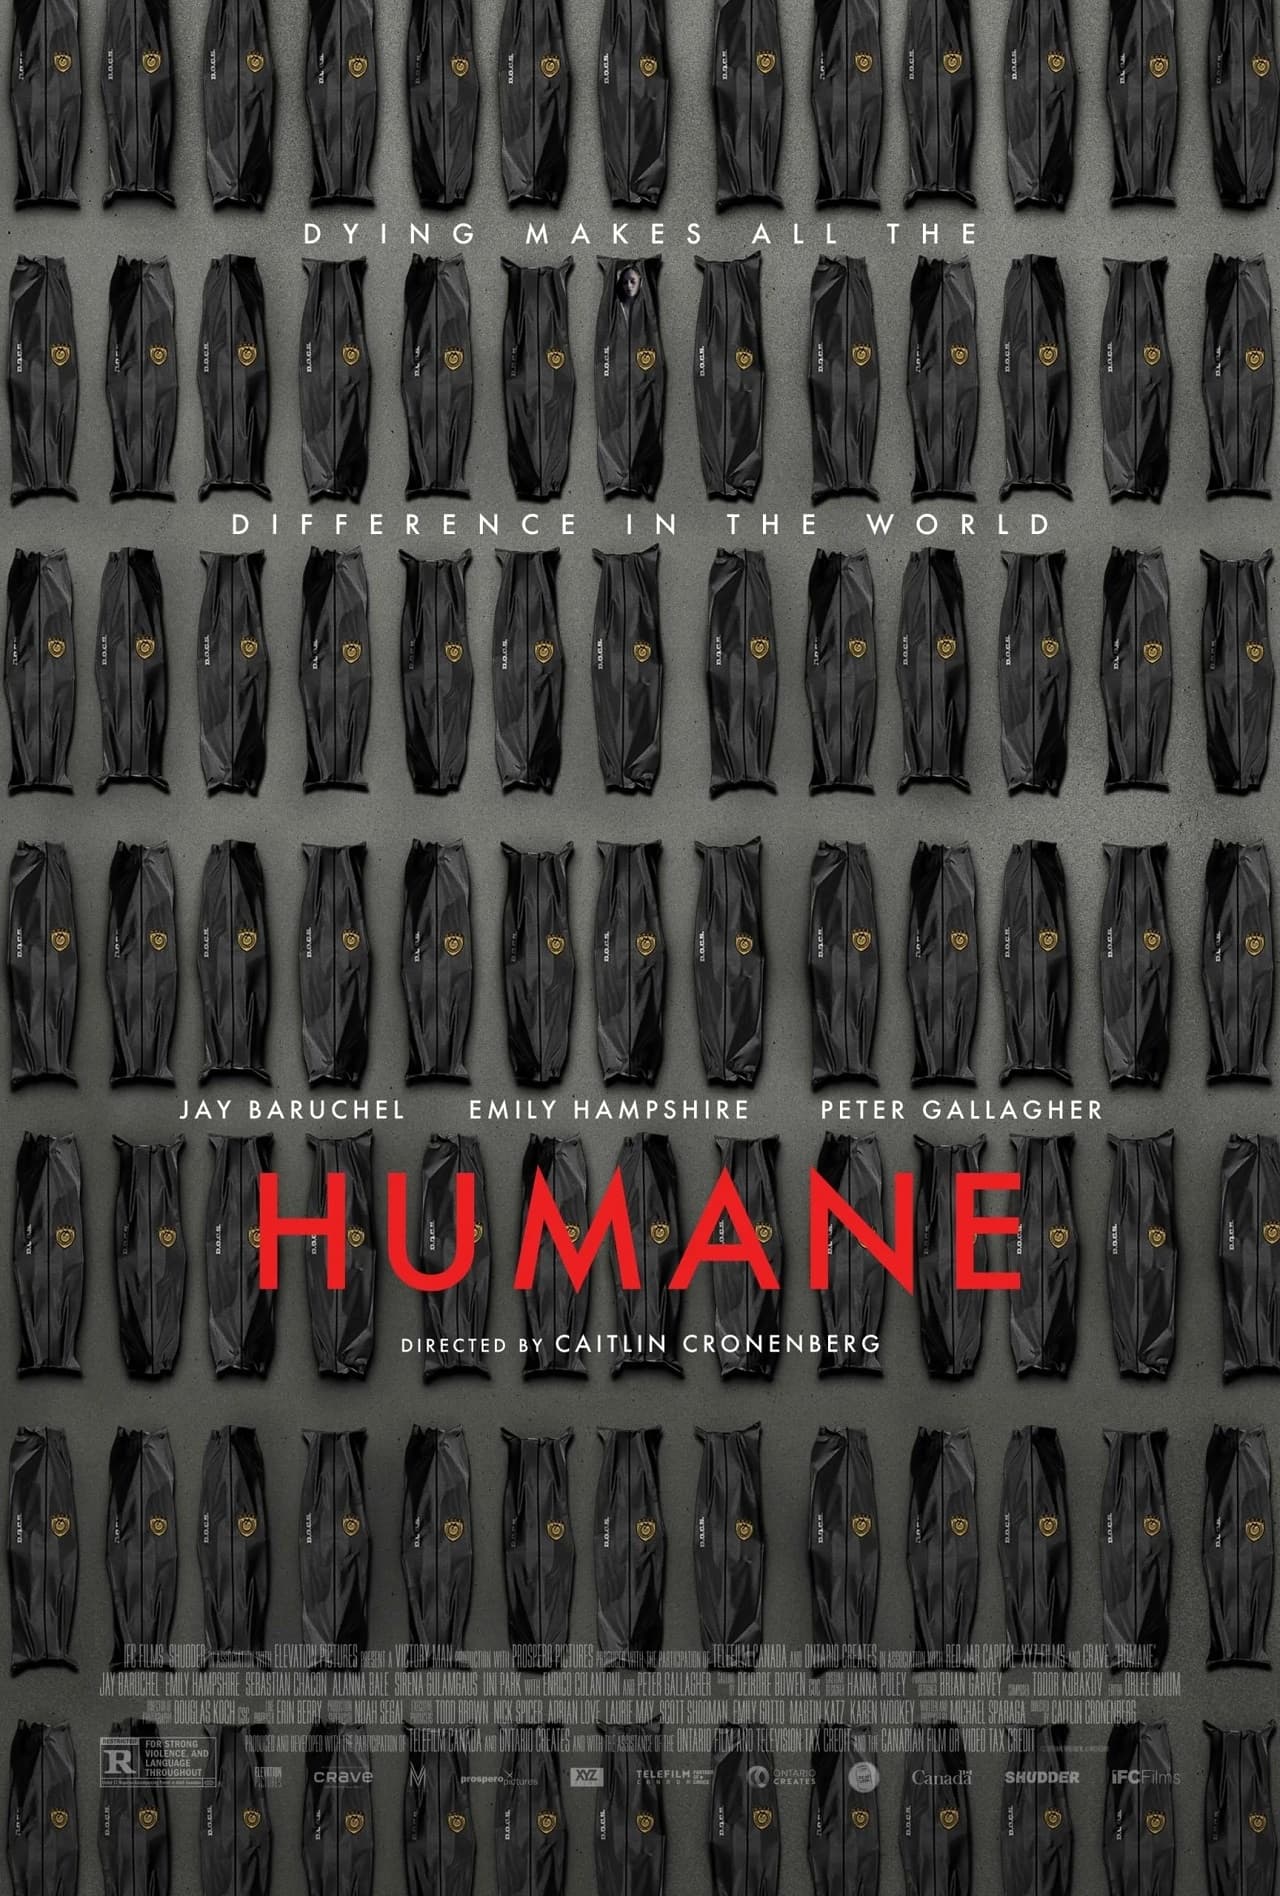 Официальный постер фантастического хоррора Humane («Гуманный способ») Кэйтлин Кроненберг